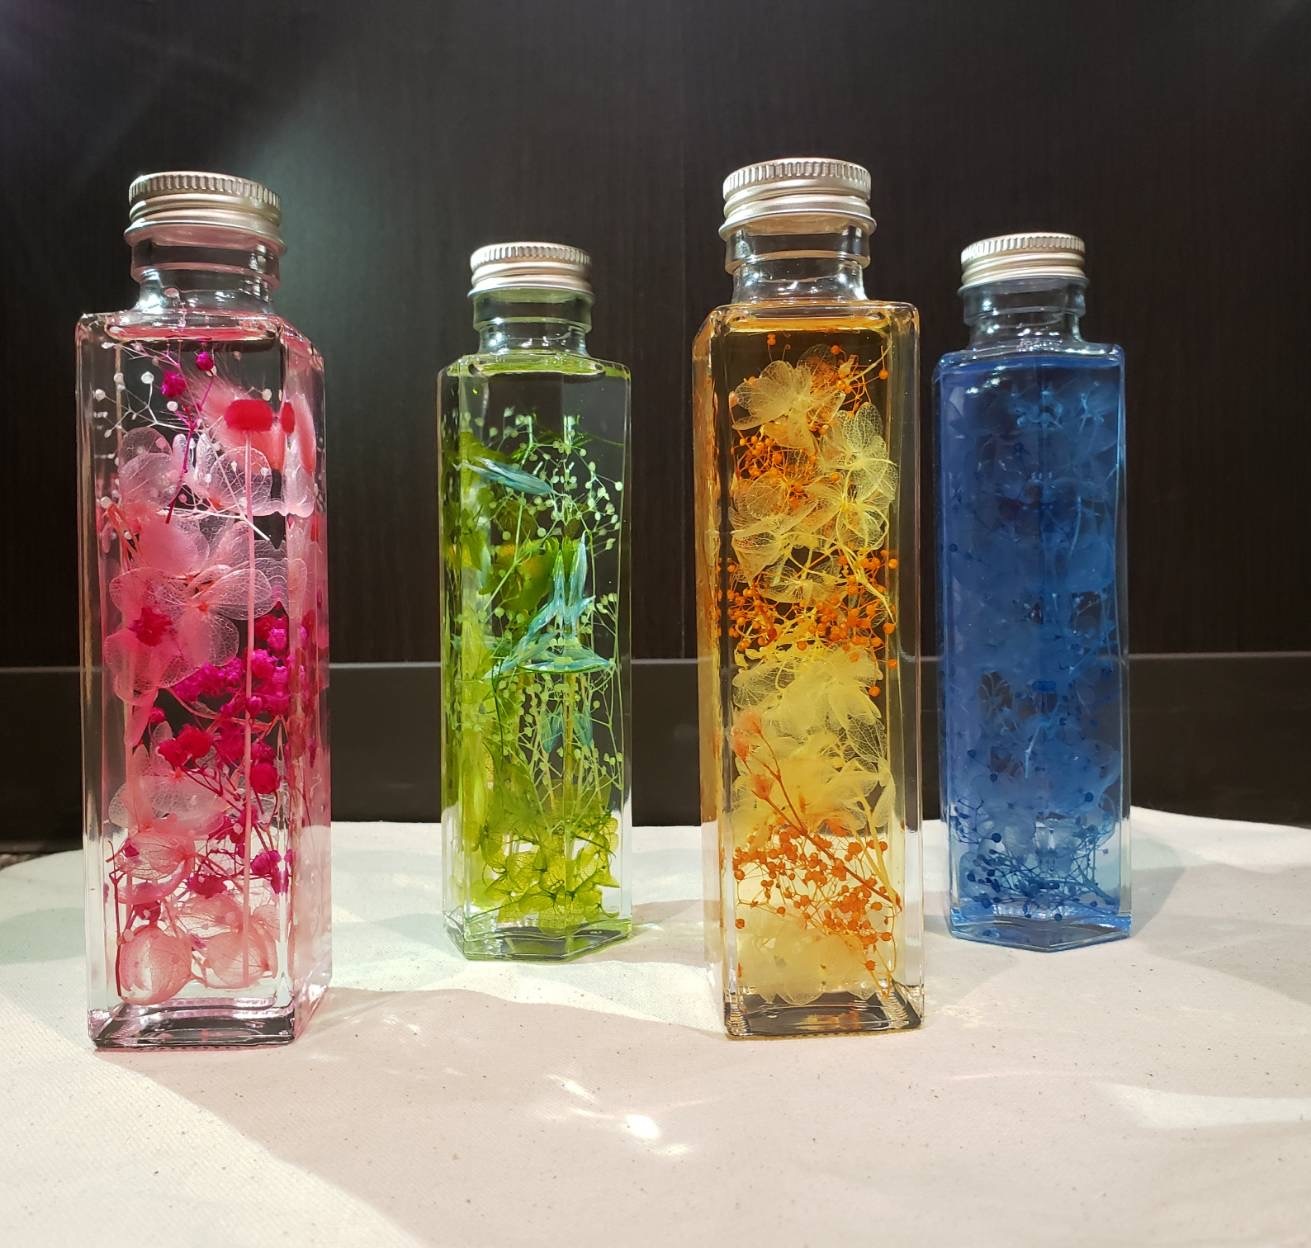 ガラスの可愛い小瓶にお花をオイル漬けにする体験イベント『ハーバリウム作り』